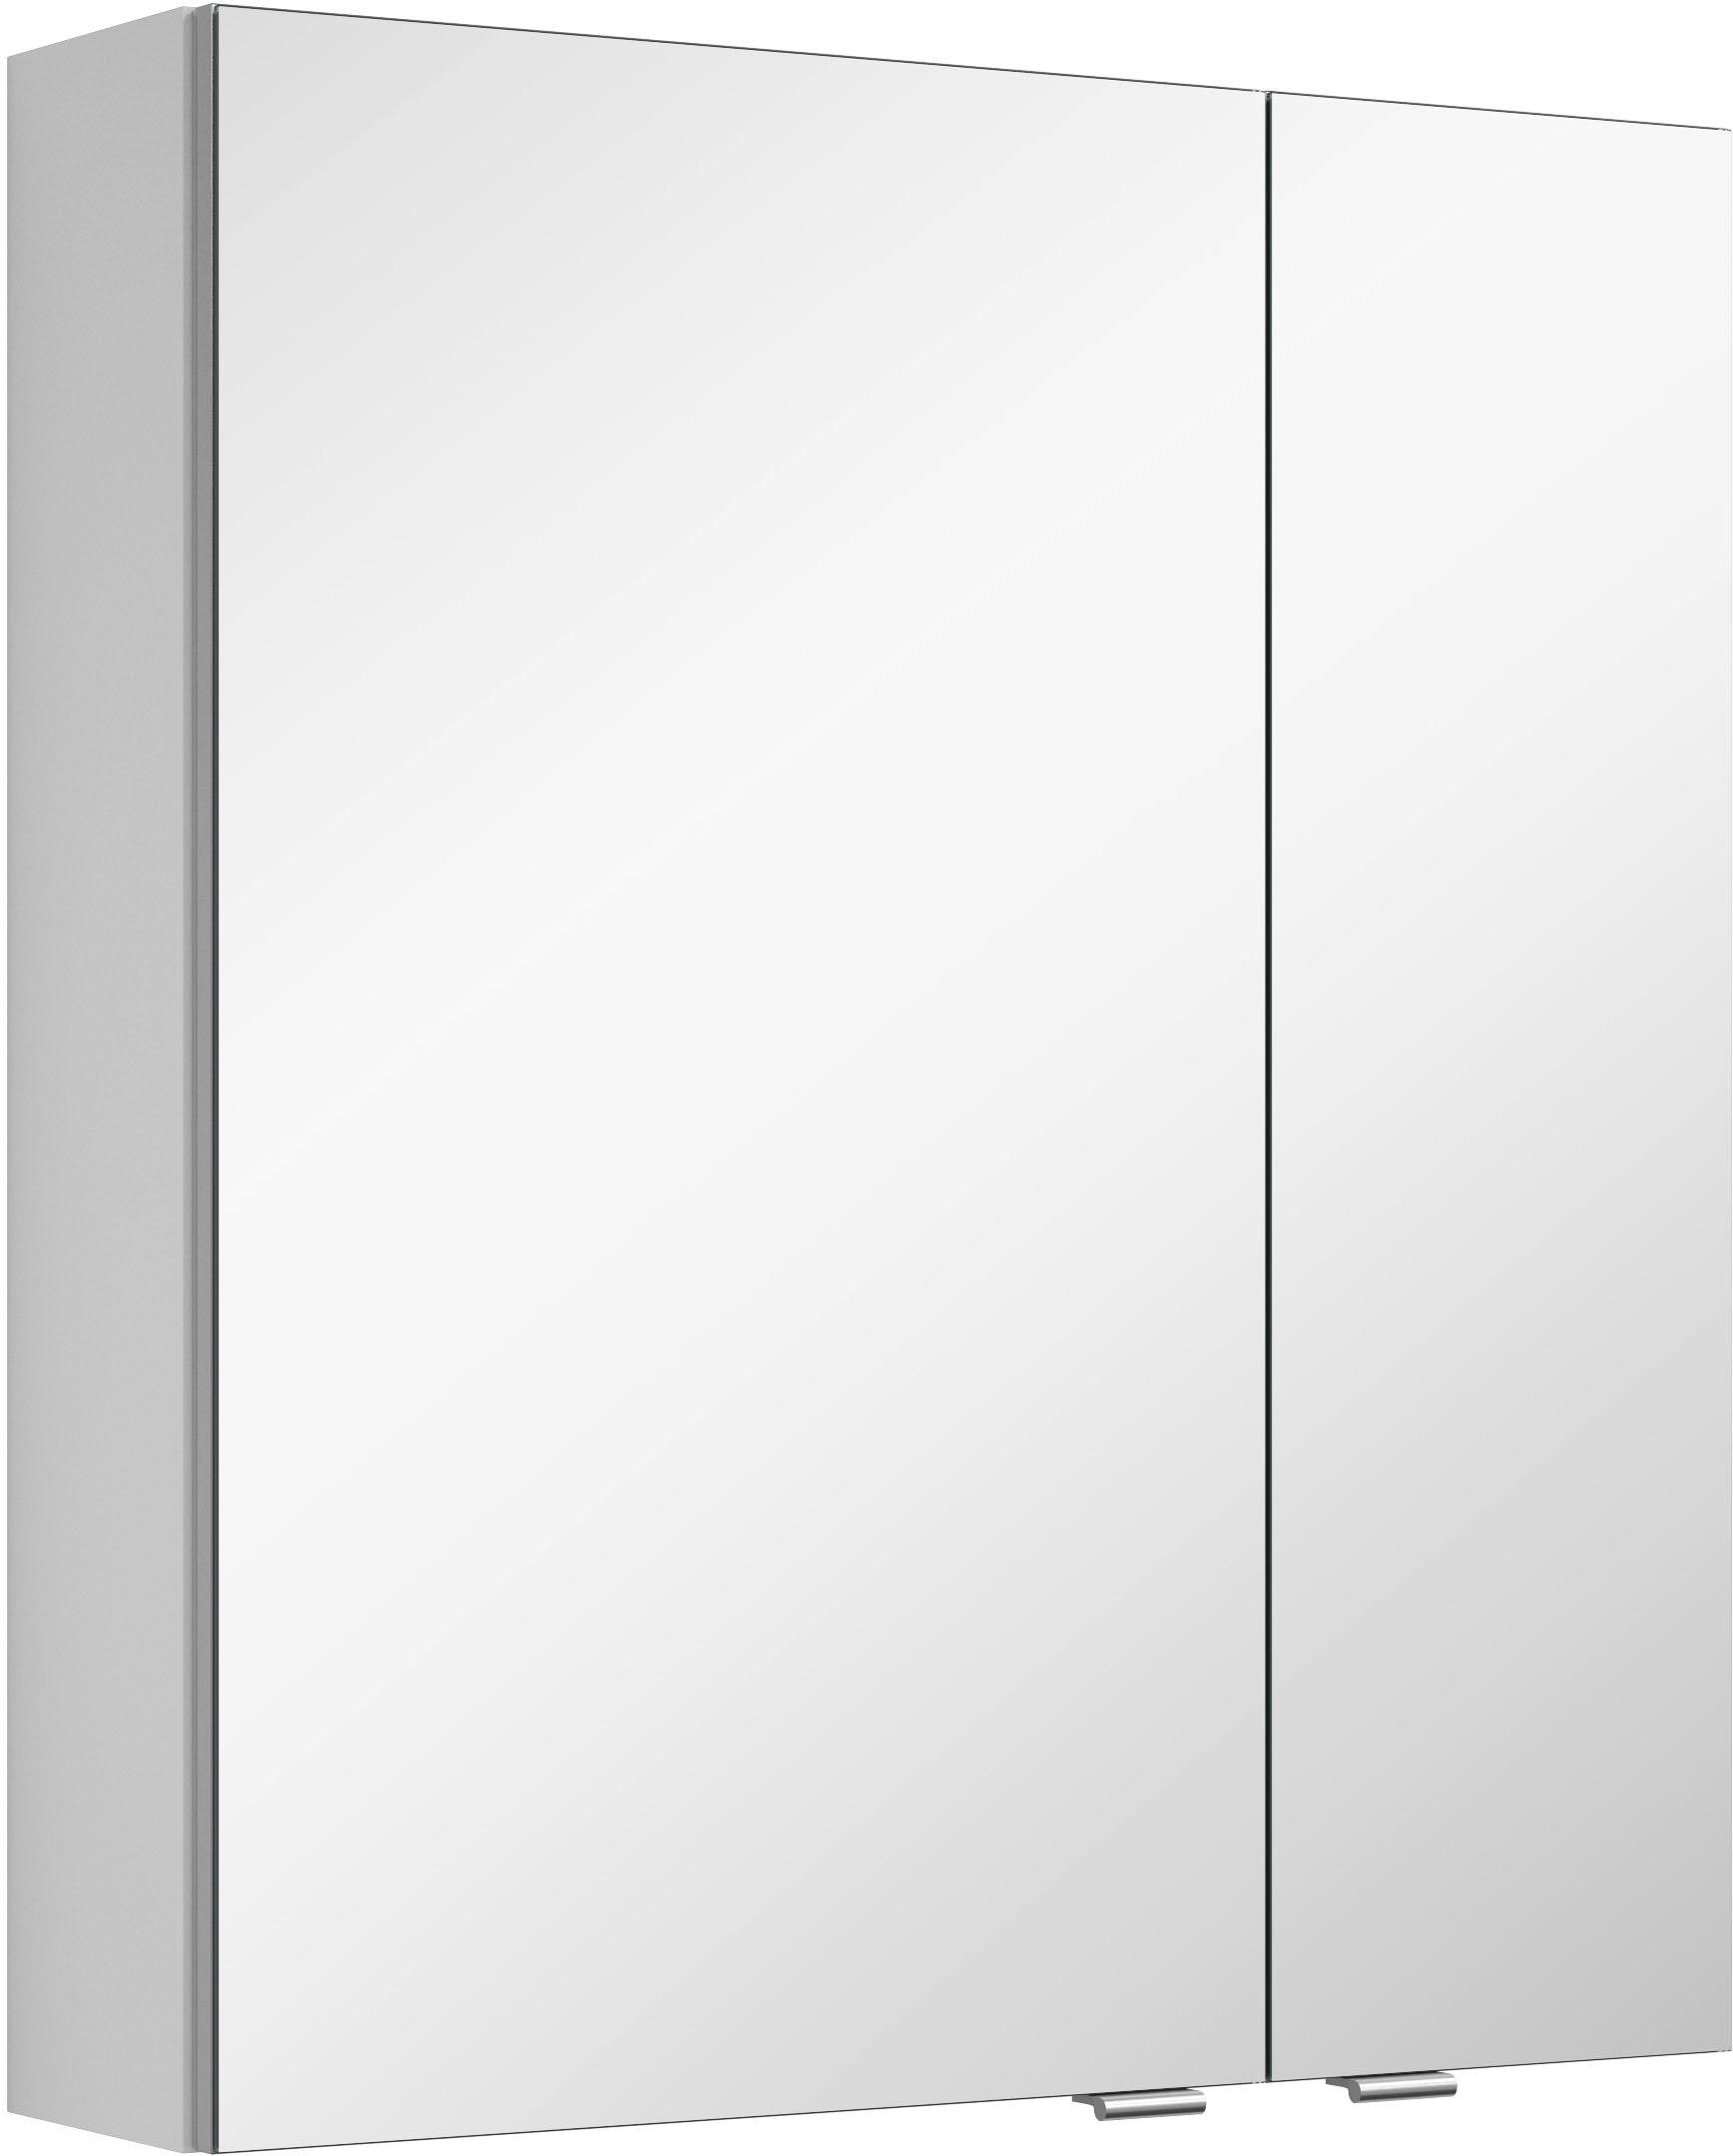 MARLIN Spiegelschrank »3980«, verspiegelten doppelseitig %Sale jetzt mit im vormontiert Türen